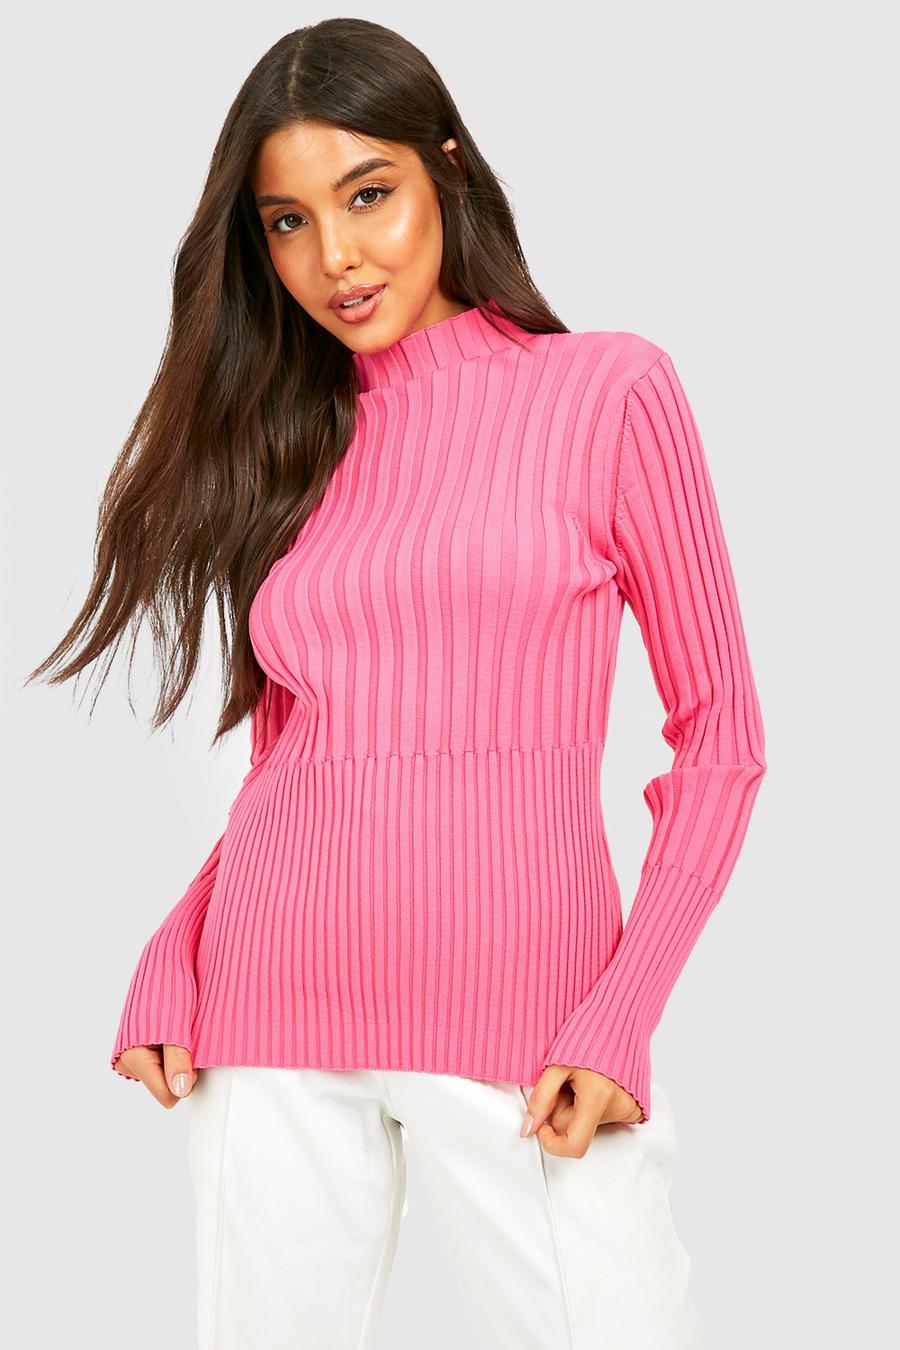 Hot pink סוודר בשני צבעים עם צווארון גבוה